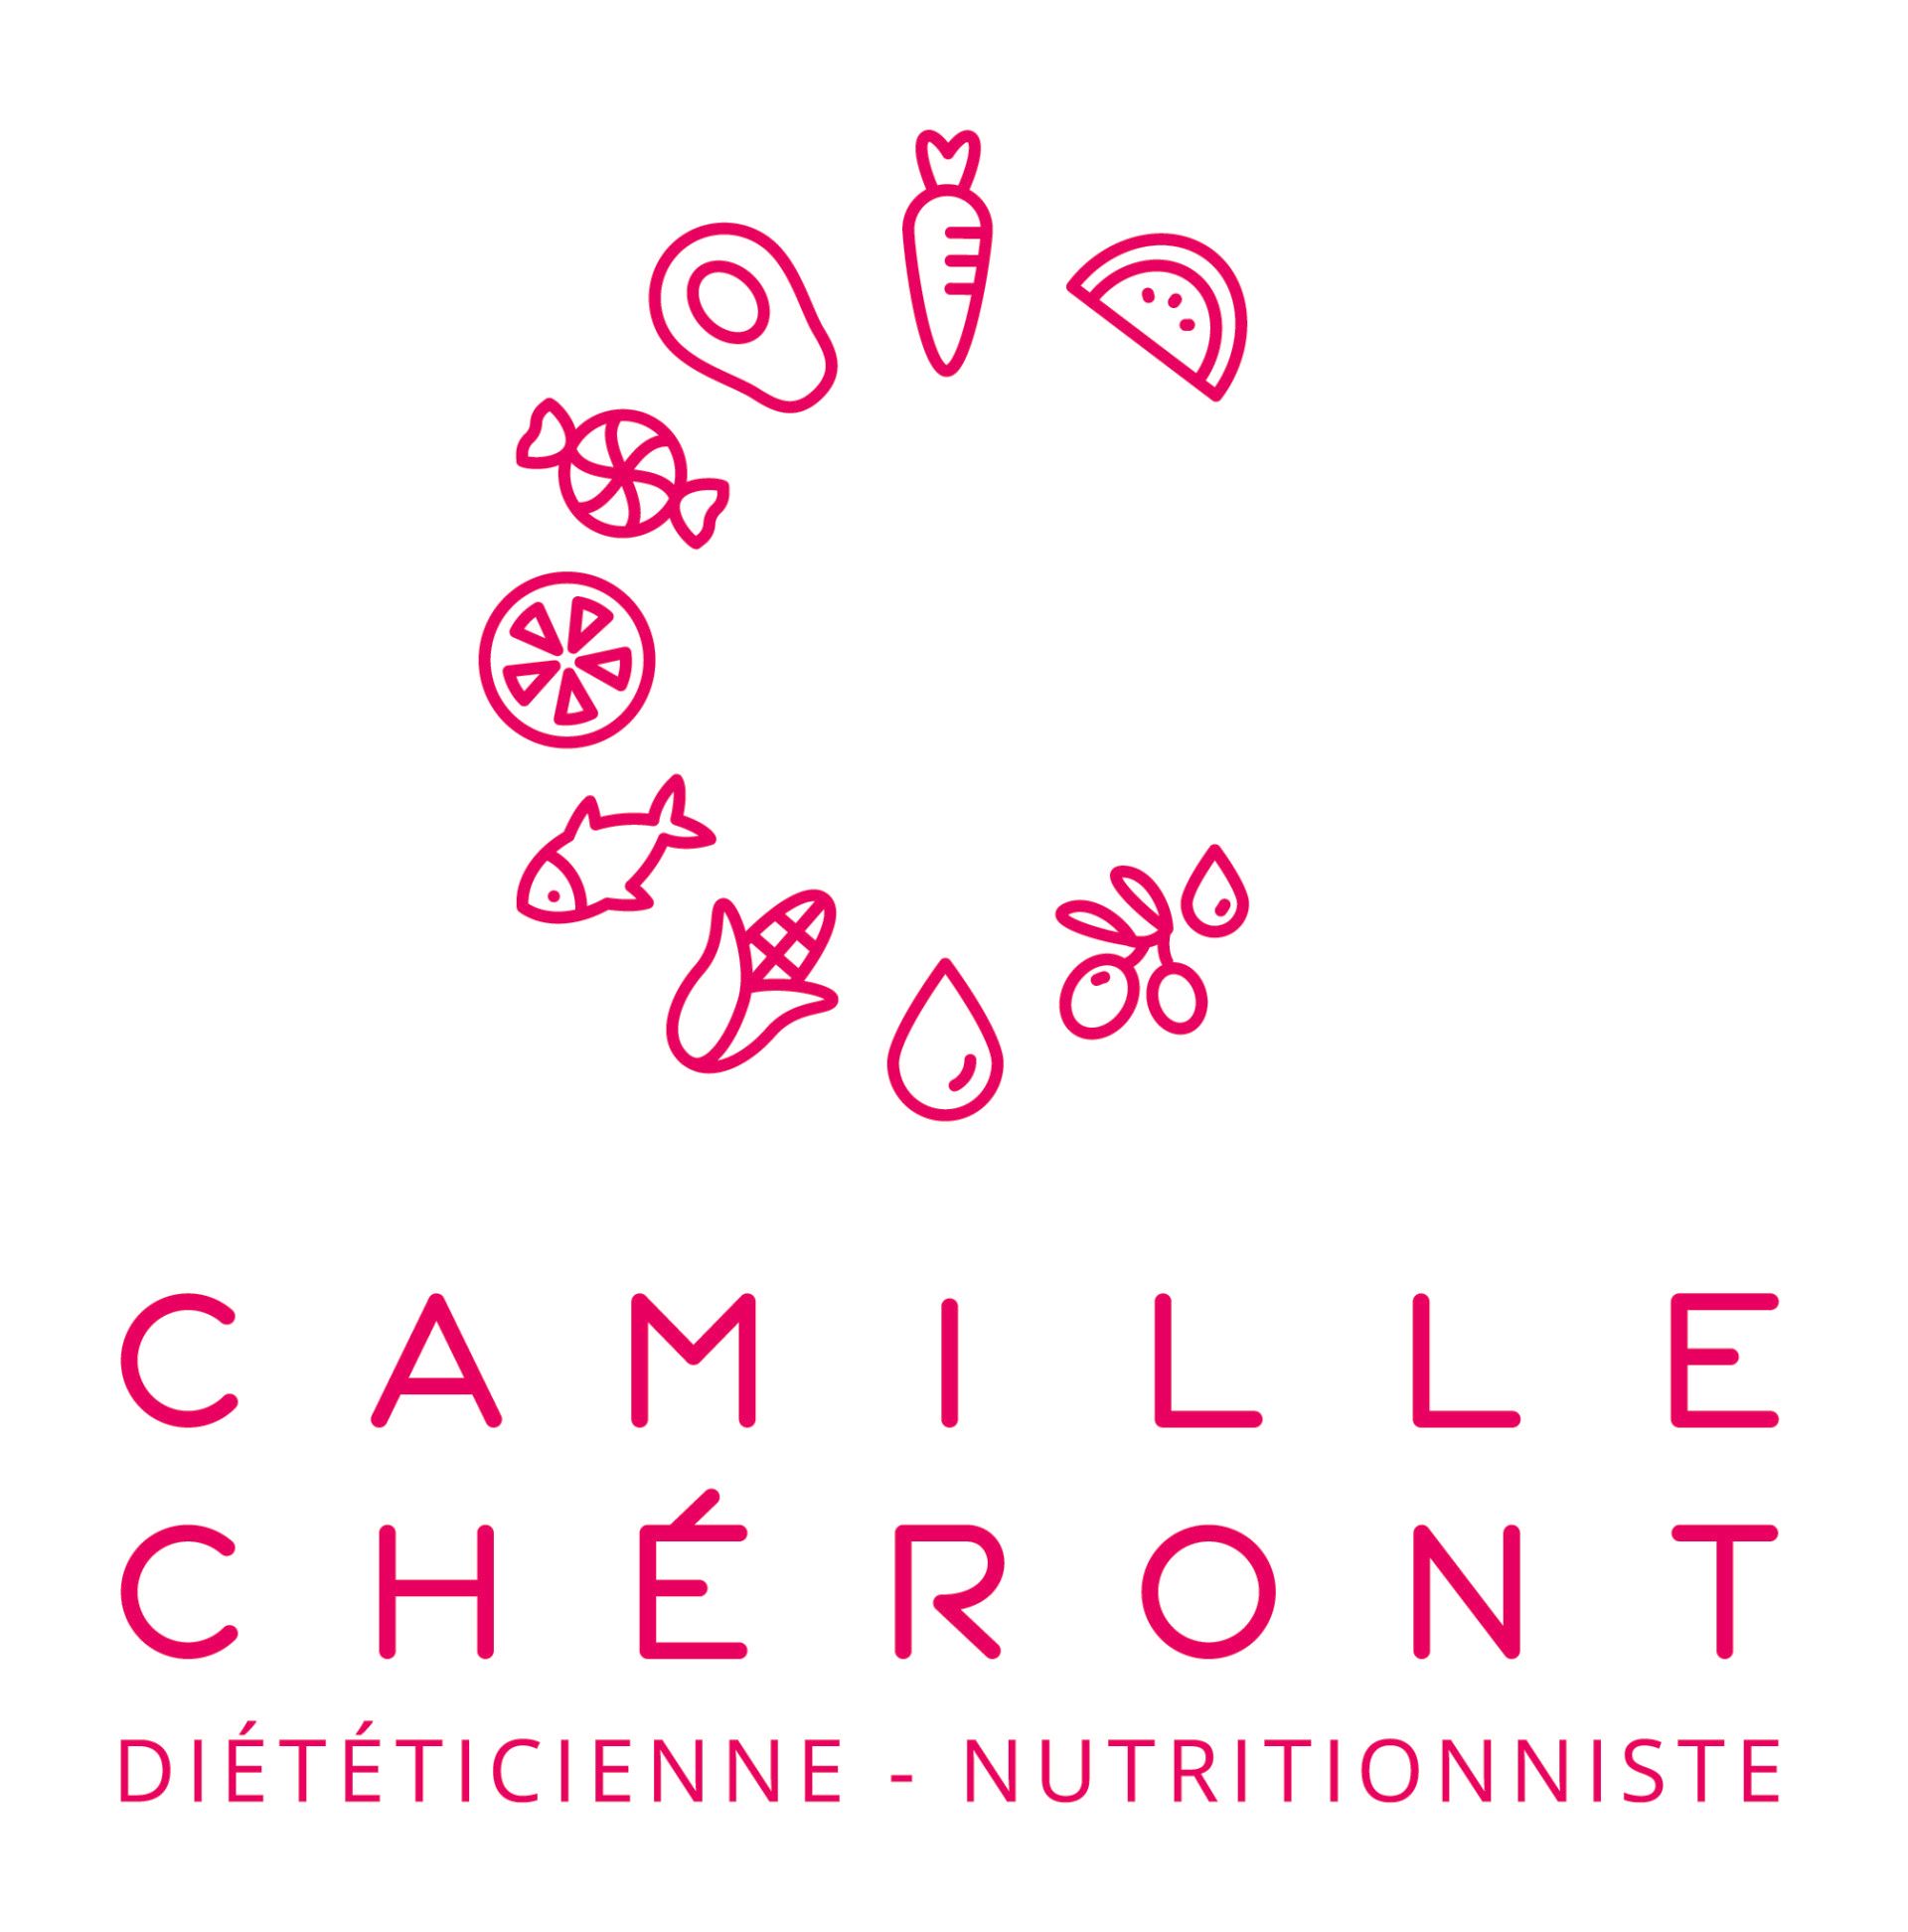 (c) Dieteticien-nutritionniste78.fr